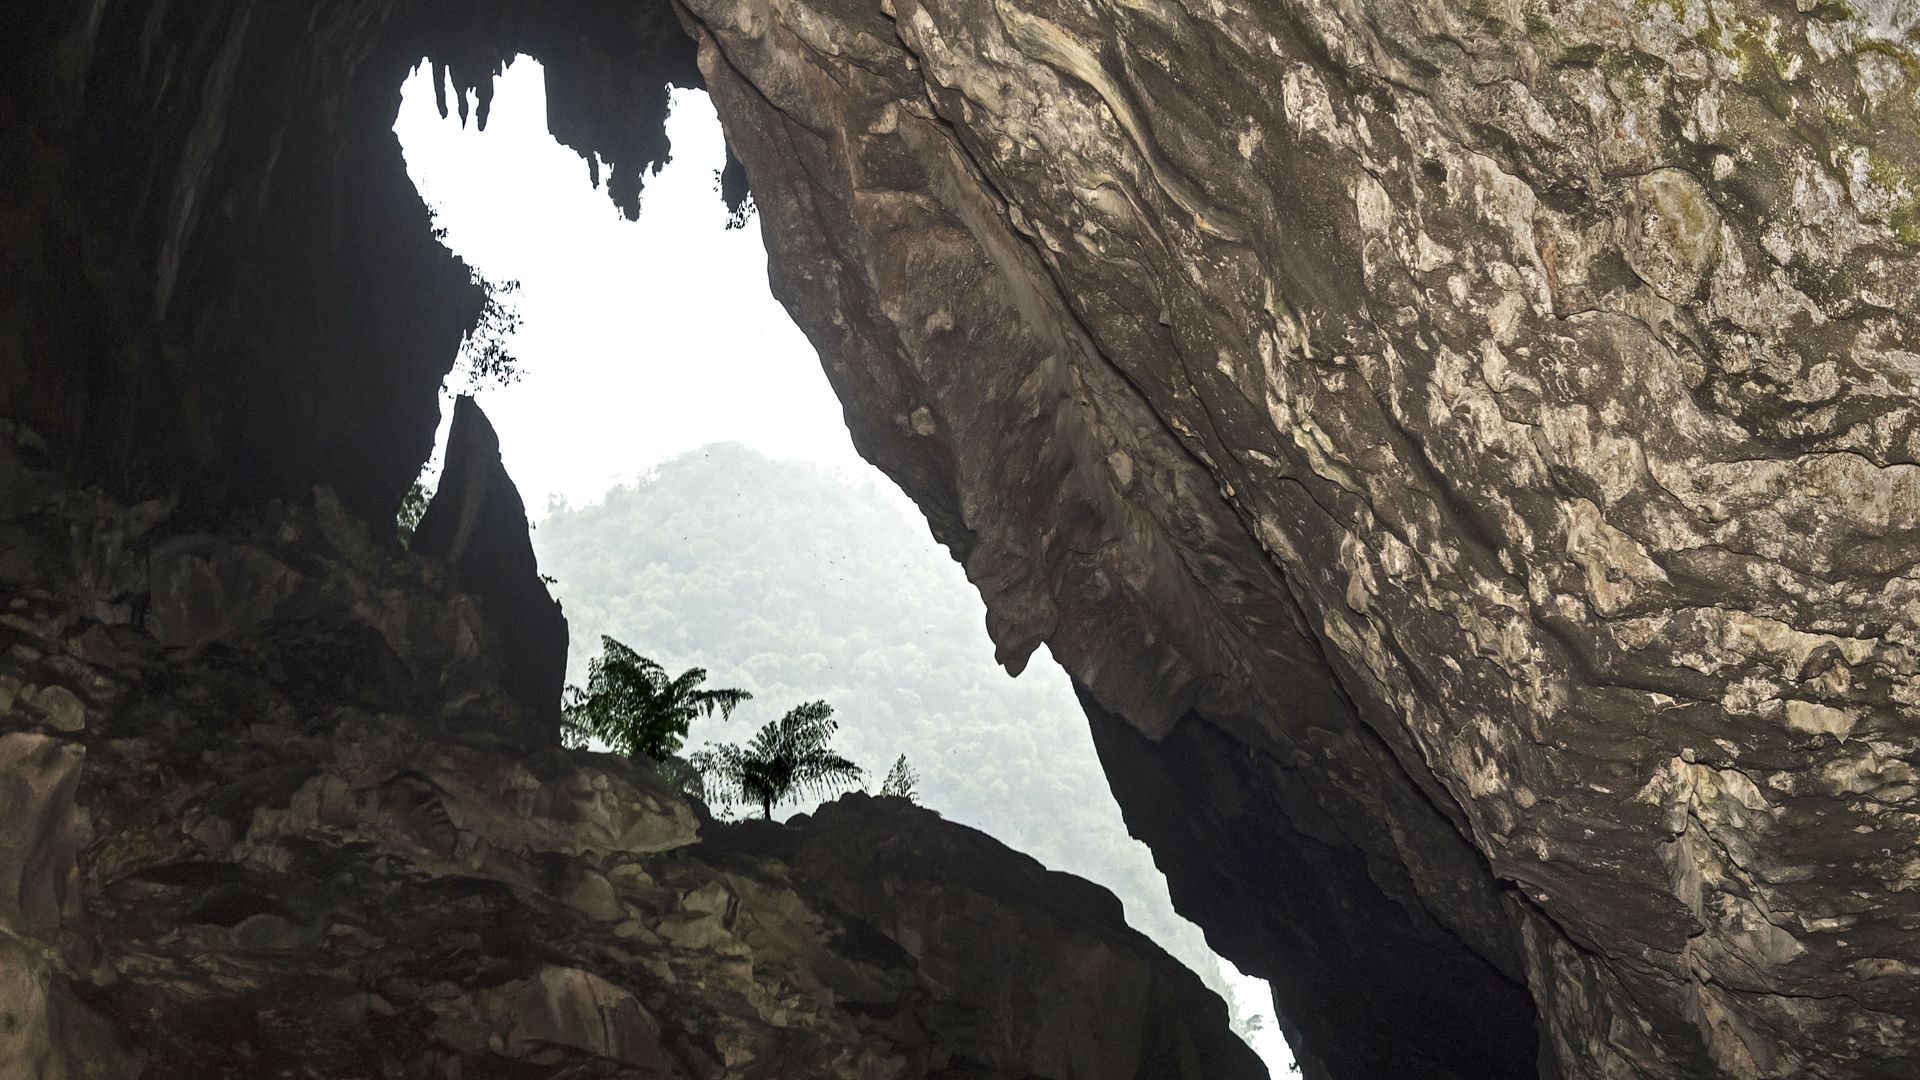 A cave in Borneo, Malaysia.